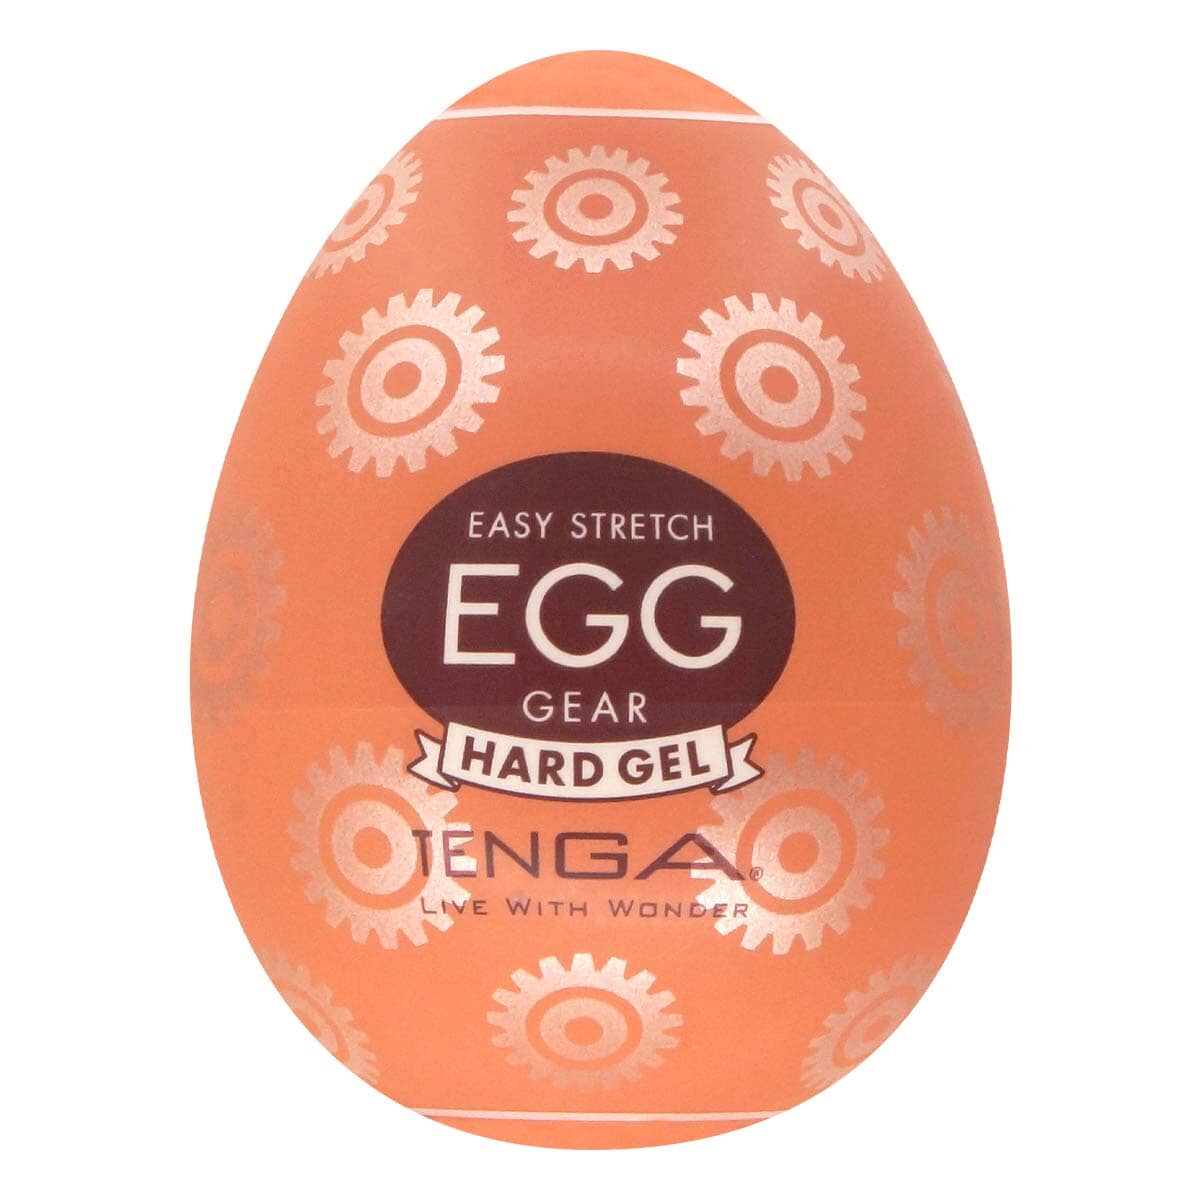 TENGA Egg Hard Gel Gear 飛機蛋 購買